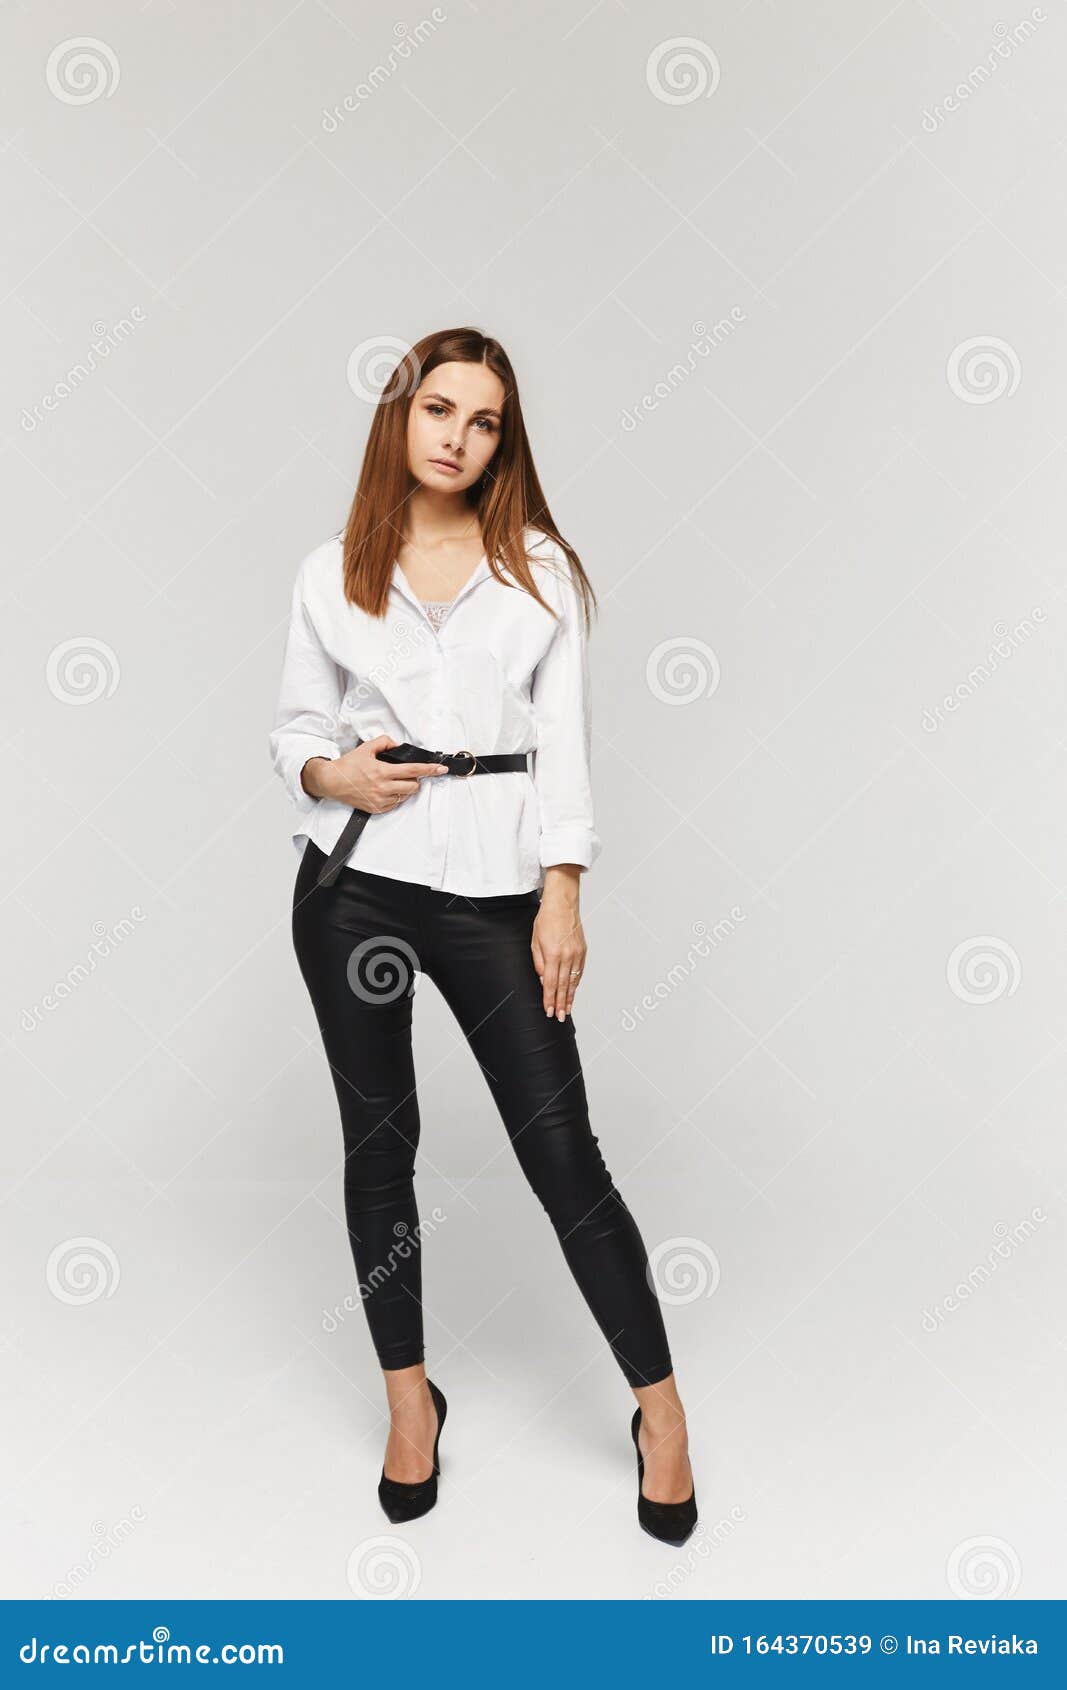 Retrato De Mujer Joven Con Camisa Blanca Y Pantalones Negros Aislados De Fondo Empresaria Elegante Imagen de archivo - Imagen de brillante, persona: 164370539